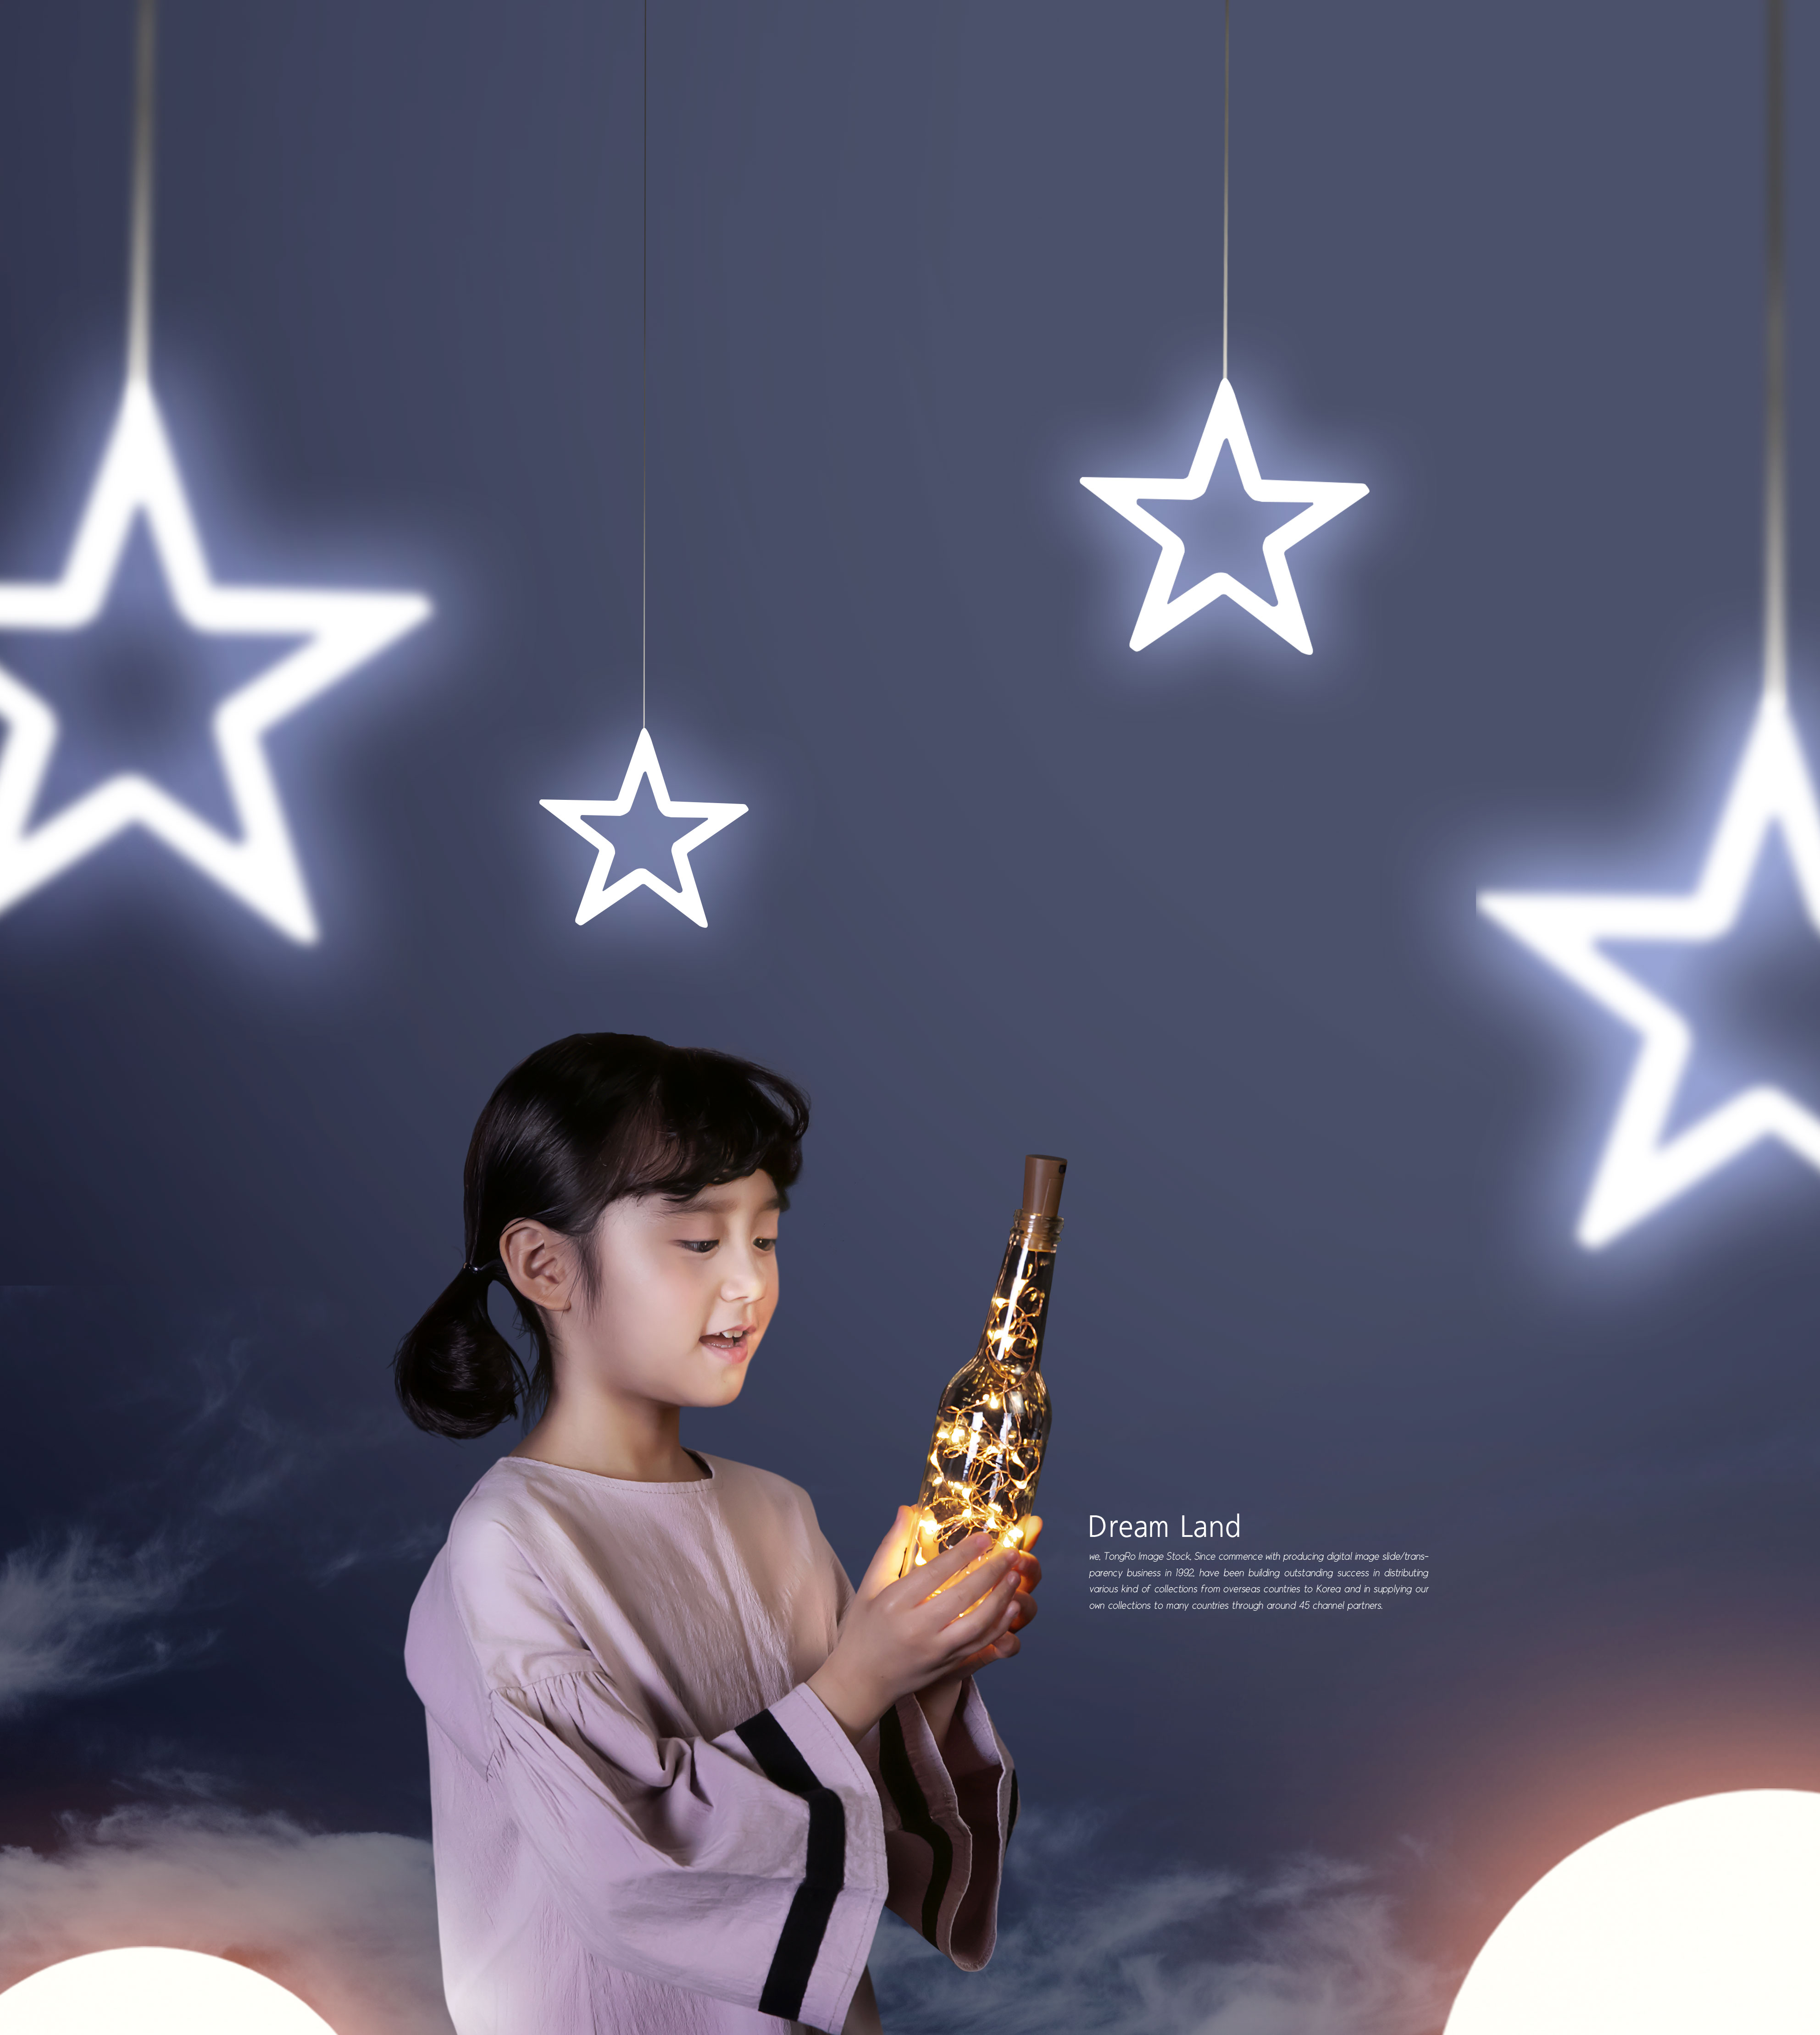 唯美星空梦境晚安主题海报设计模板插图